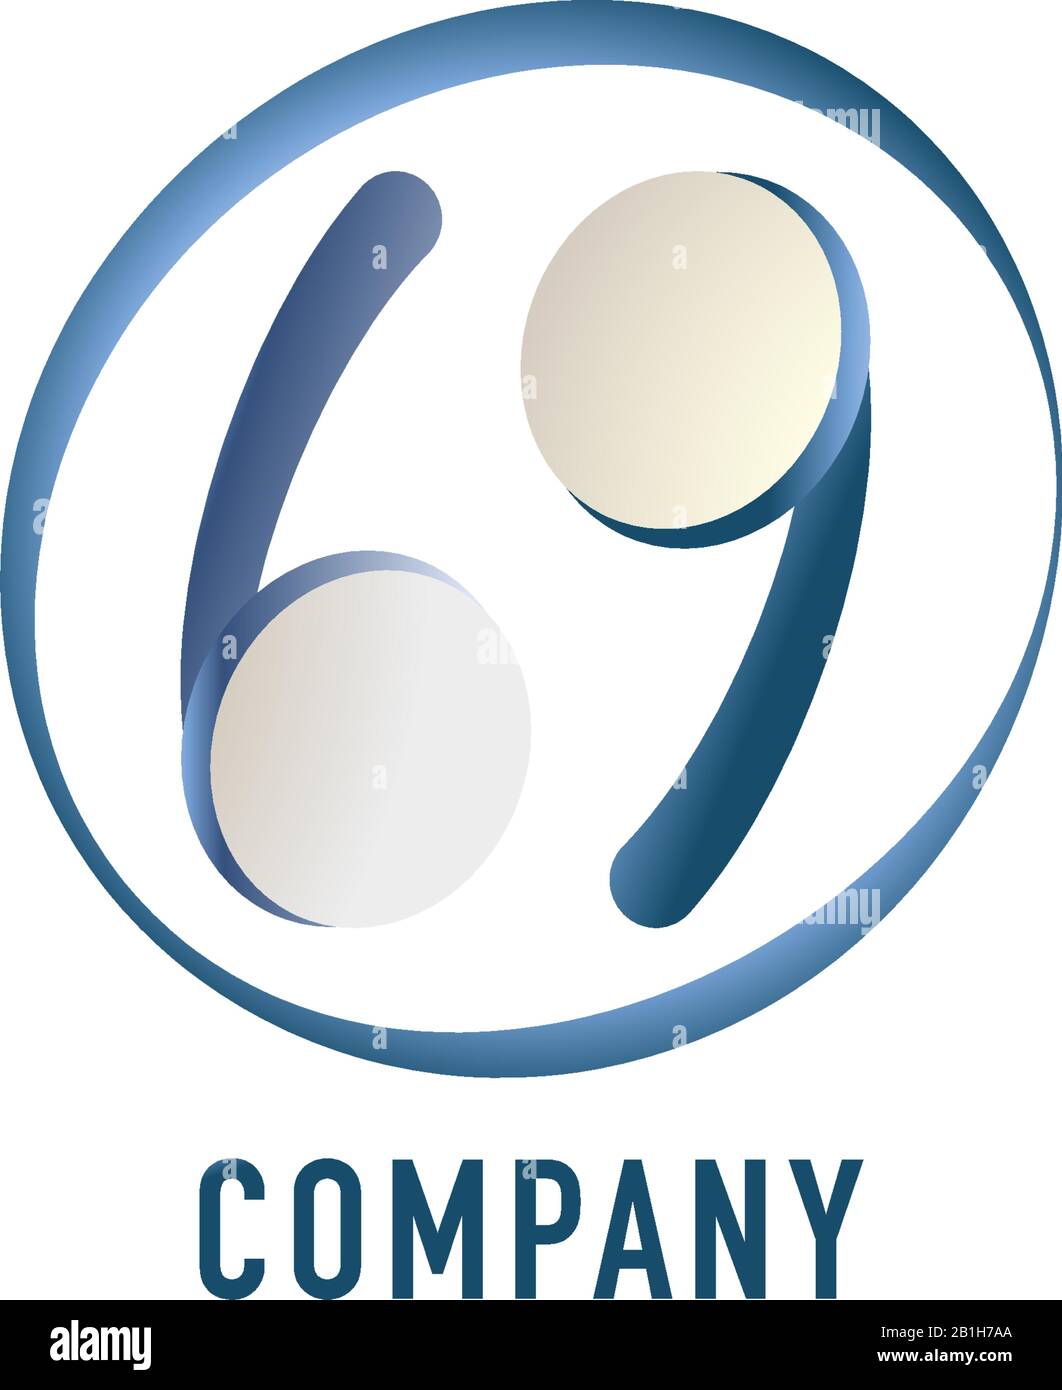 Kleinbuchstabe bg Alphabet Logo Design-Vorlage isoliert auf weißem Hintergrund. Blaues TWS-Earphone-Symbol mit 69 Nummernpositionen abgebildet. Bildhaft Stock Vektor